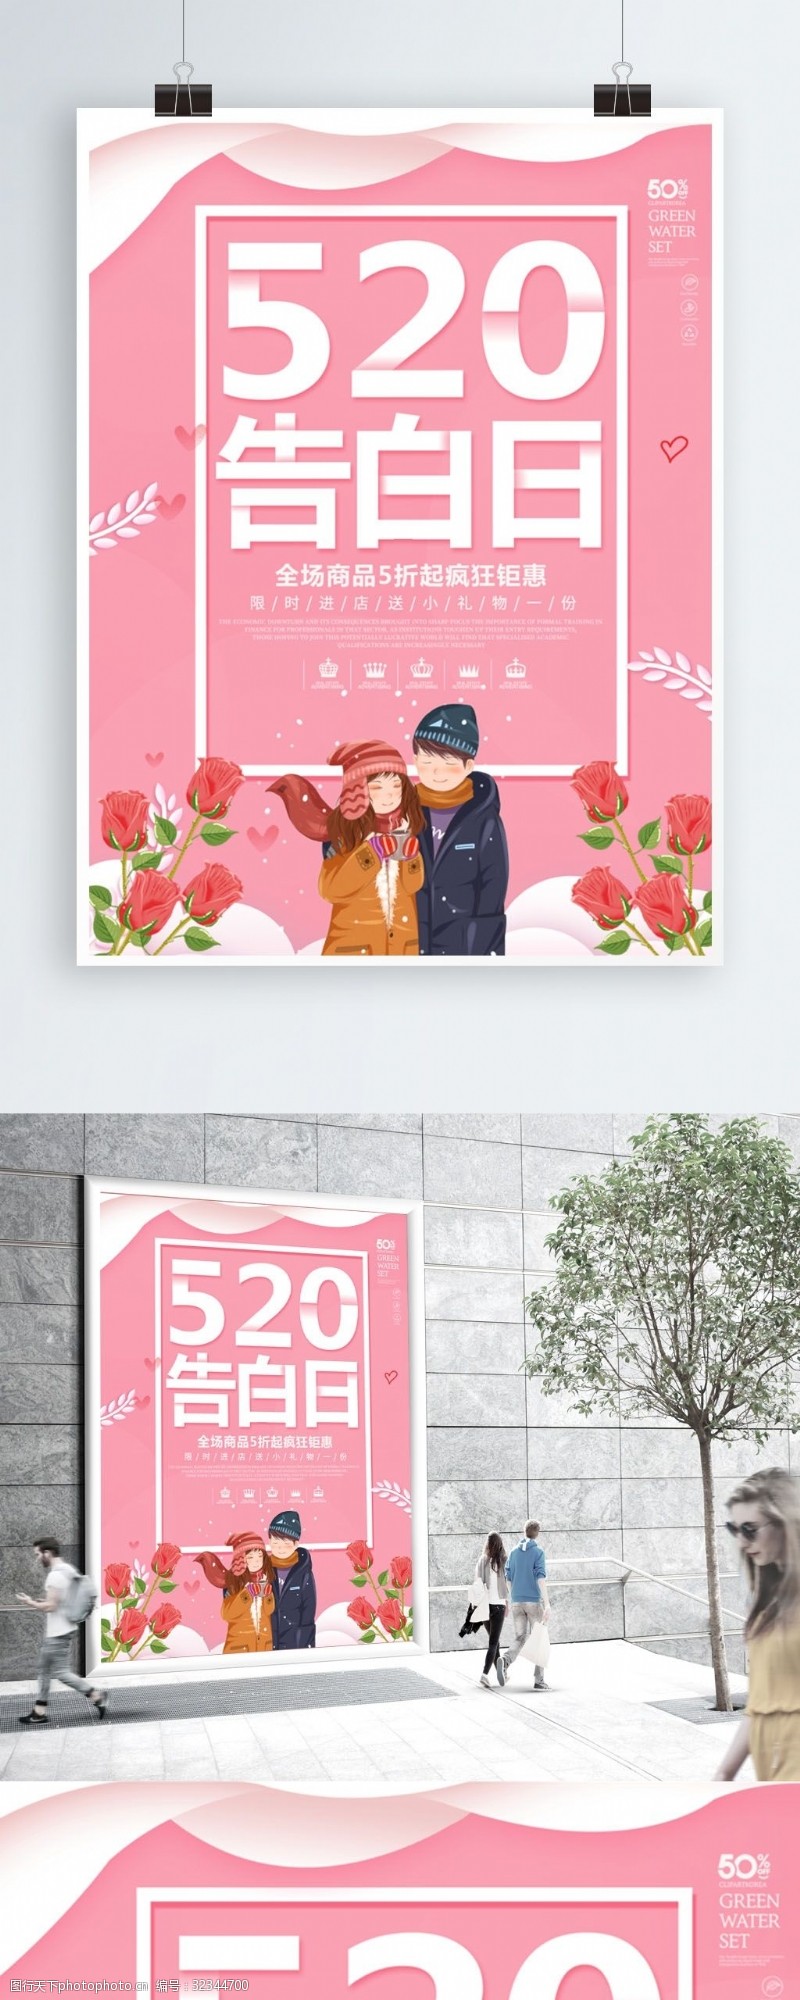 粉色唯美浪漫手绘风格520告白日海报